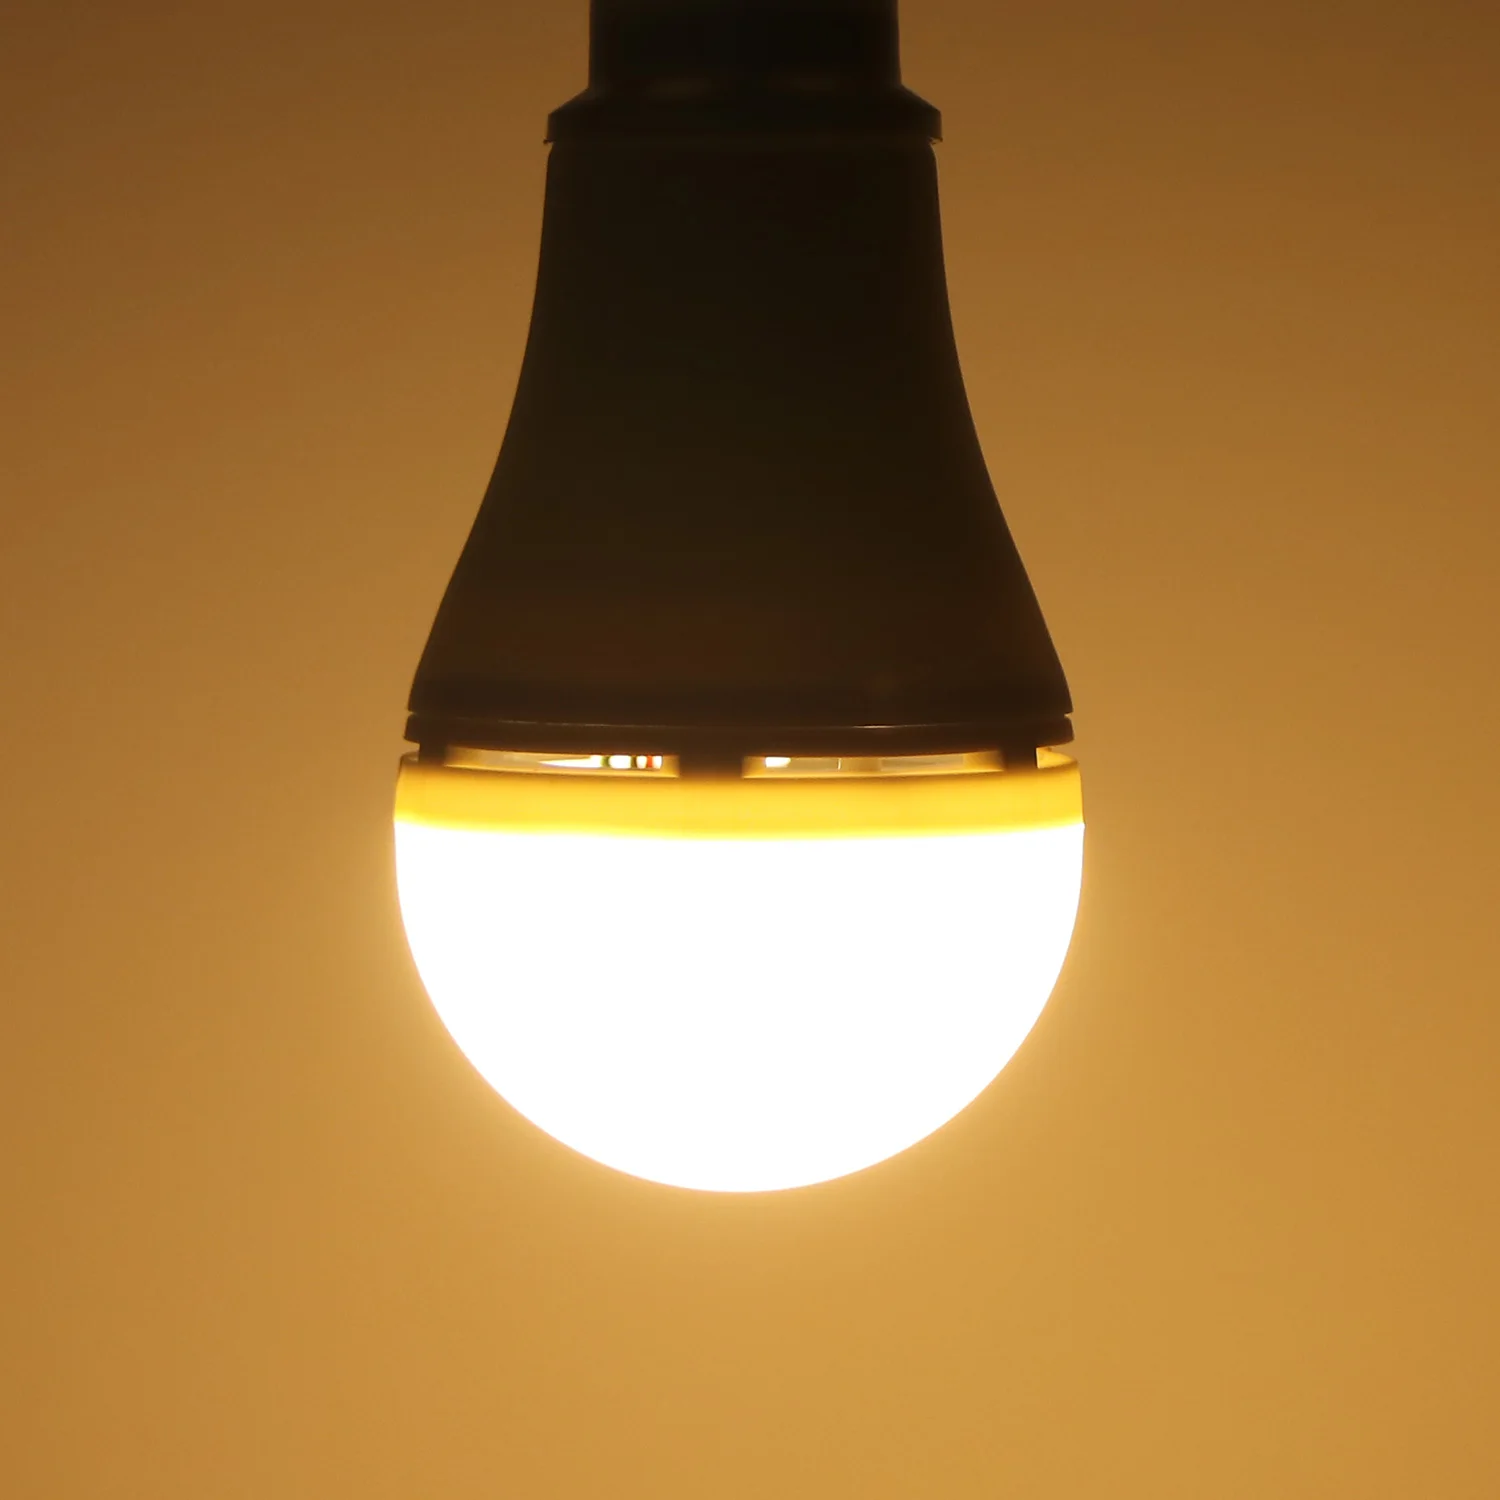 1 шт. портативная Светодиодная лампа USB свет Гараж склад аварийная лампа с переключателем подвал Открытый кемпинг свет 6 Вт/10 Вт